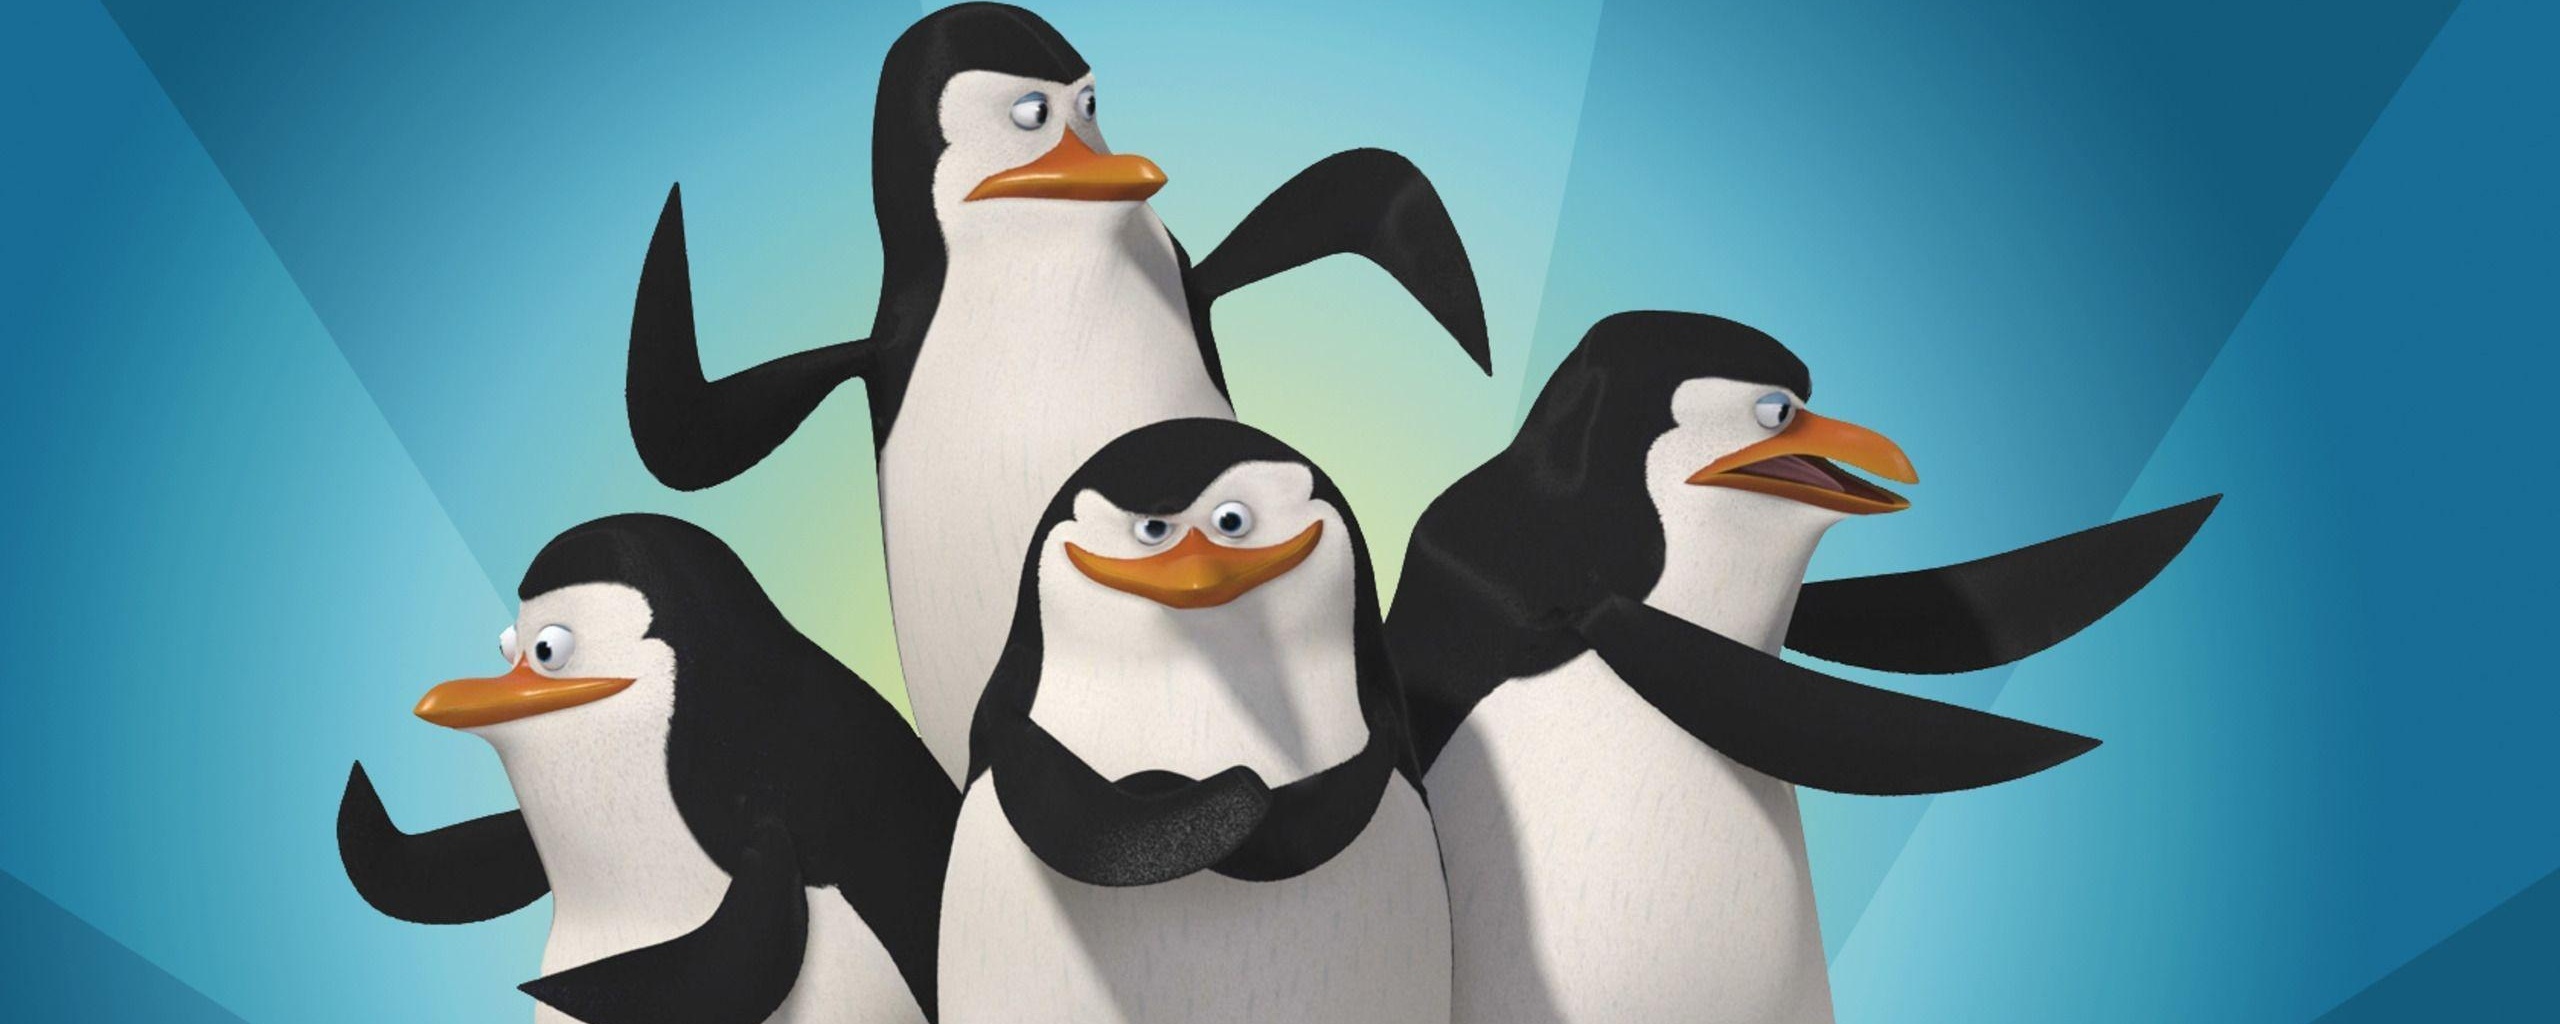 Четверо пингвинов